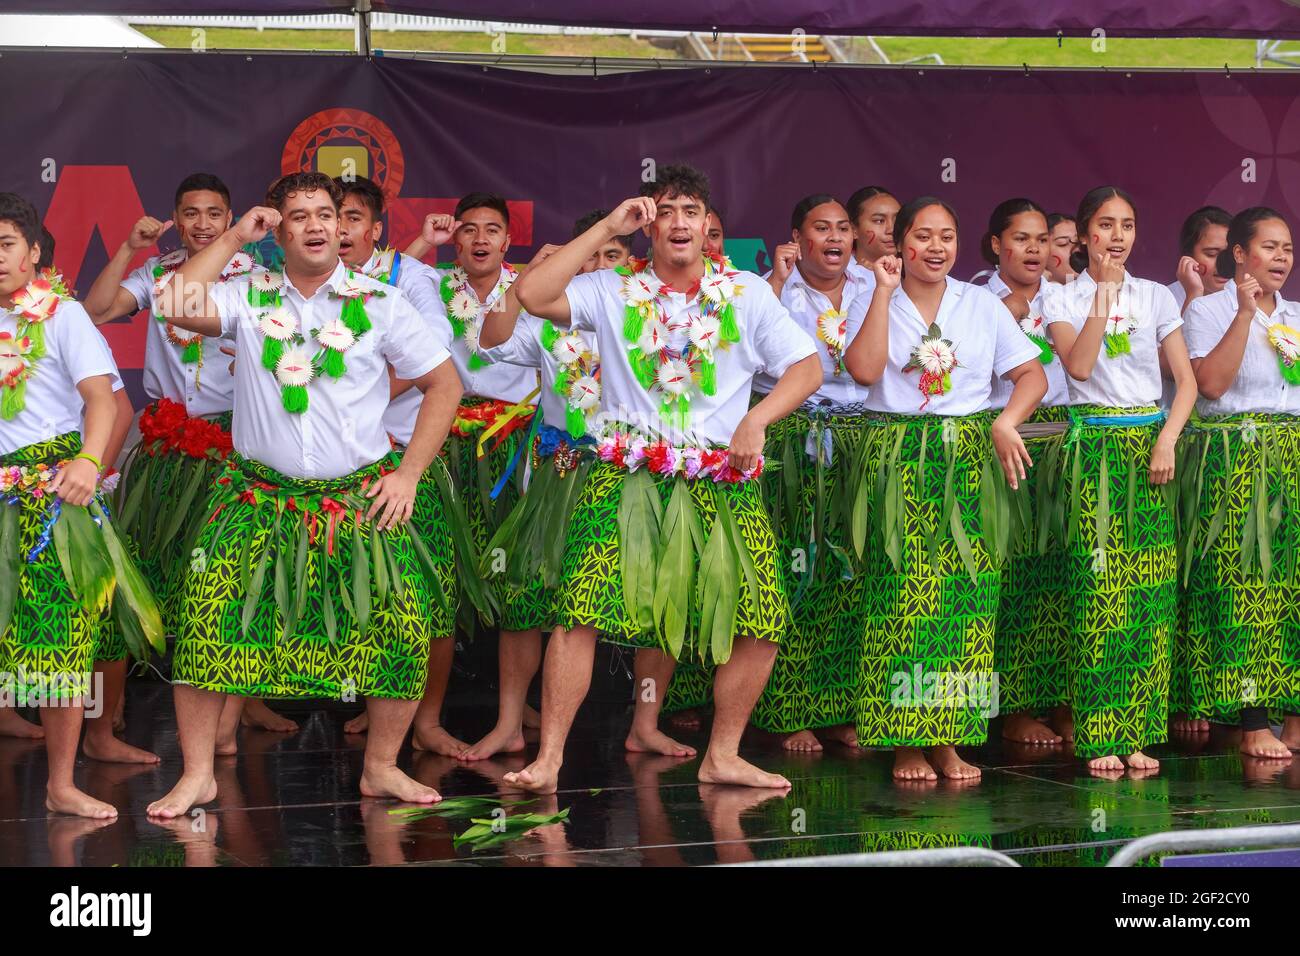 Des jeunes fidjiens hommes et femmes dansent sur scène pendant la fête de Pasifika, une célébration de la culture de l'île du Pacifique à Auckland, en Nouvelle-Zélande Banque D'Images